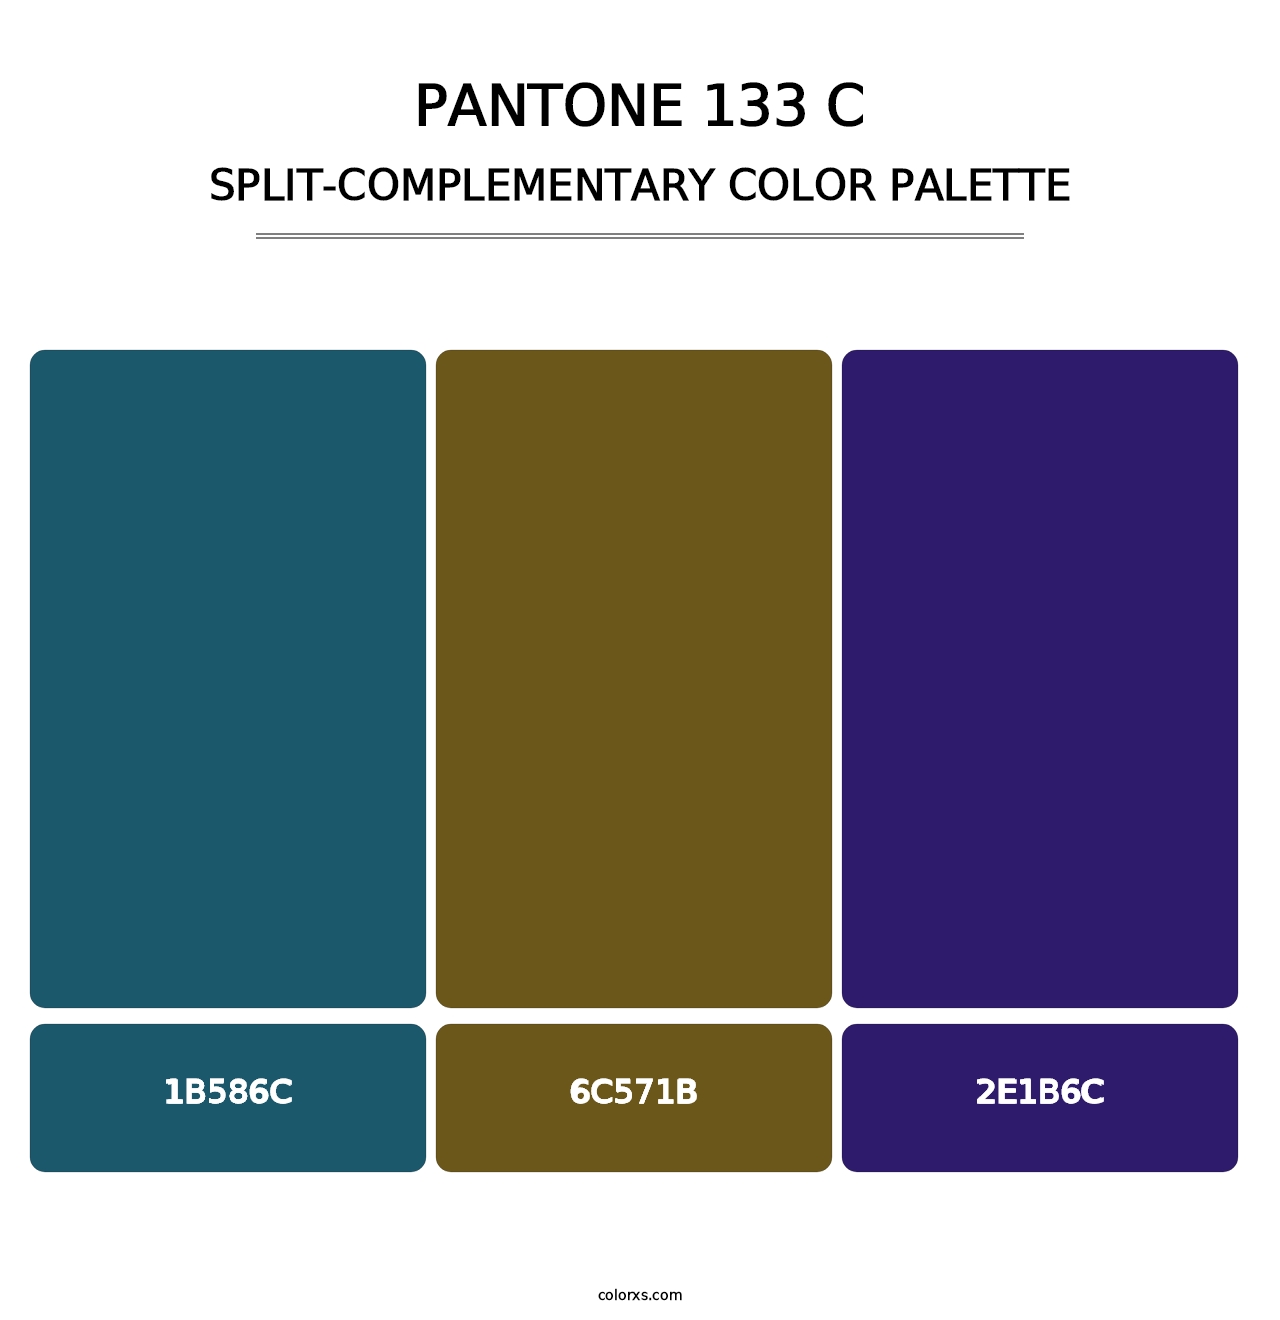 PANTONE 133 C - Split-Complementary Color Palette